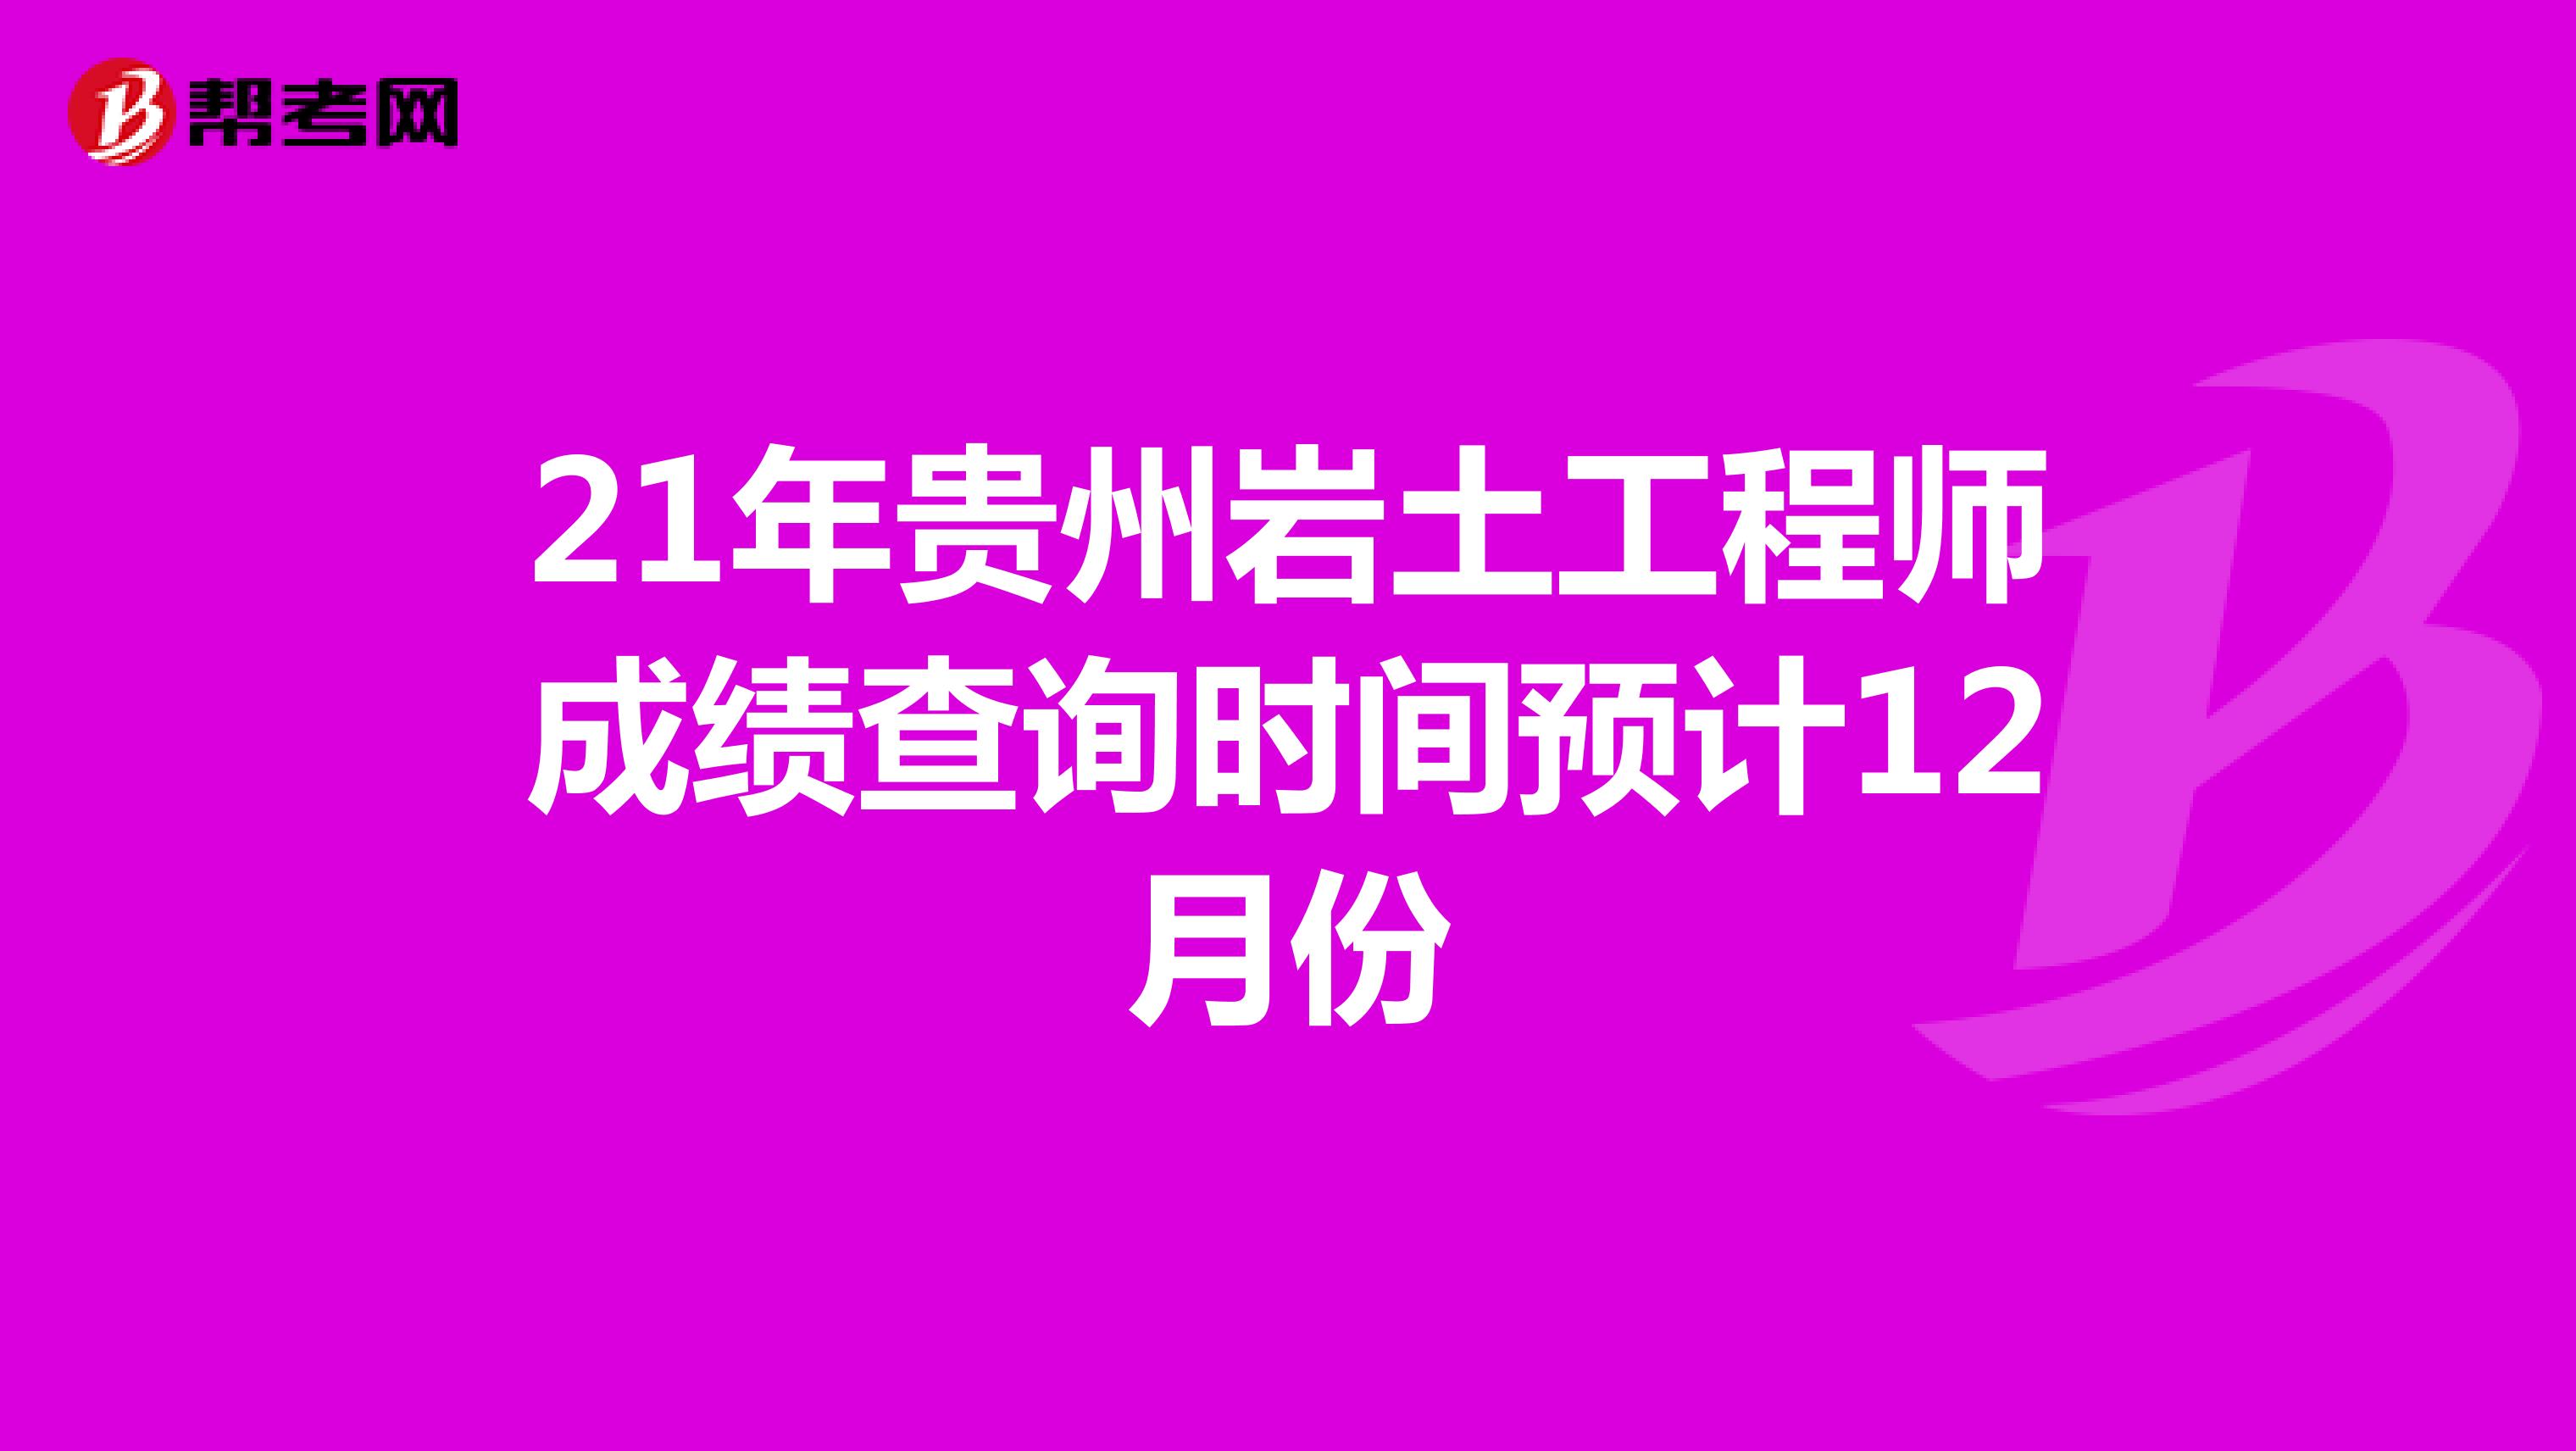 21年贵州岩土工程师成绩查询时间预计12月份